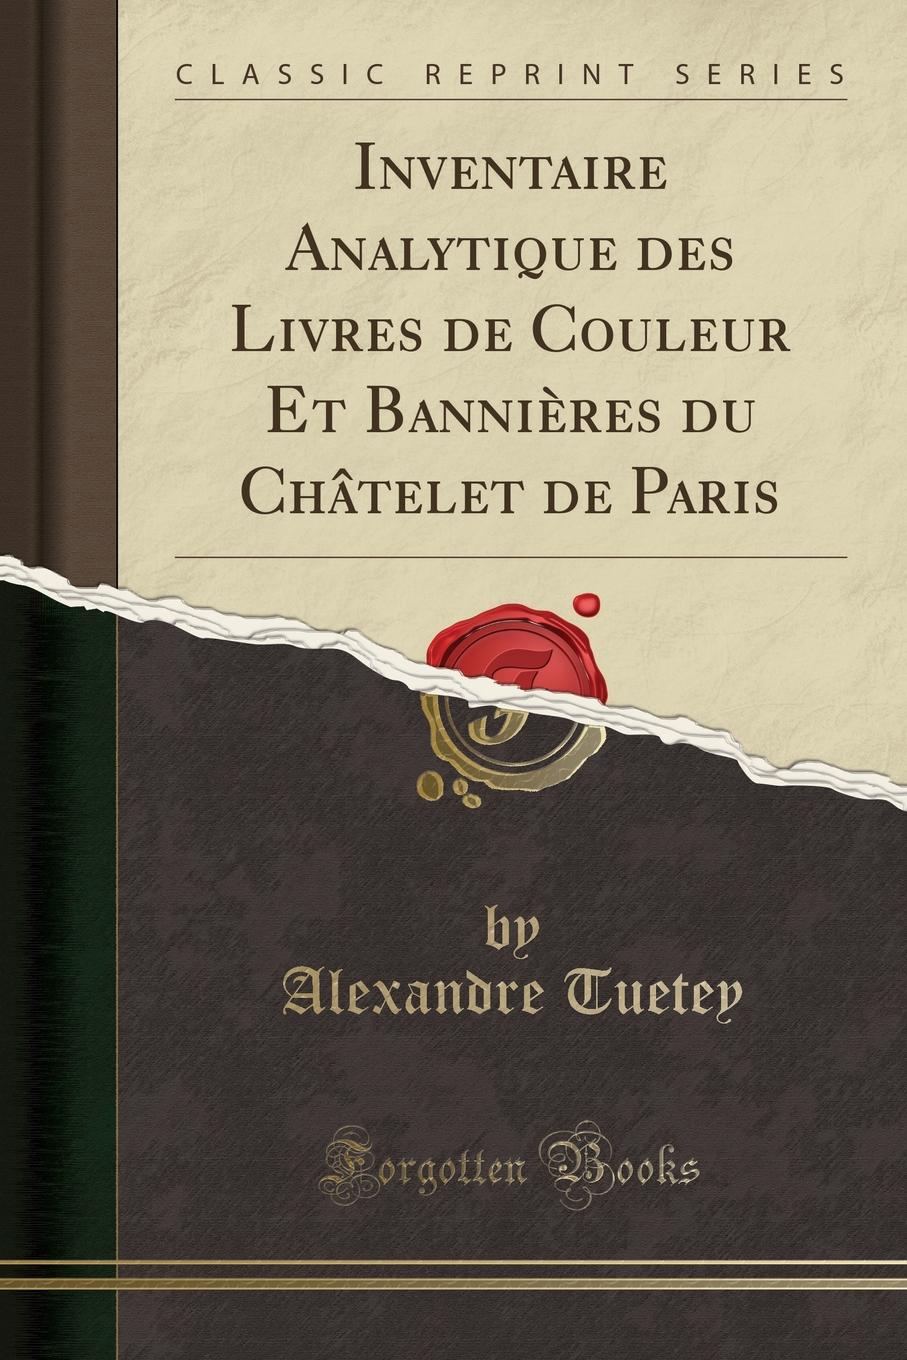 Alexandre Tuetey Inventaire Analytique des Livres de Couleur Et Bannieres du Chatelet de Paris (Classic Reprint)